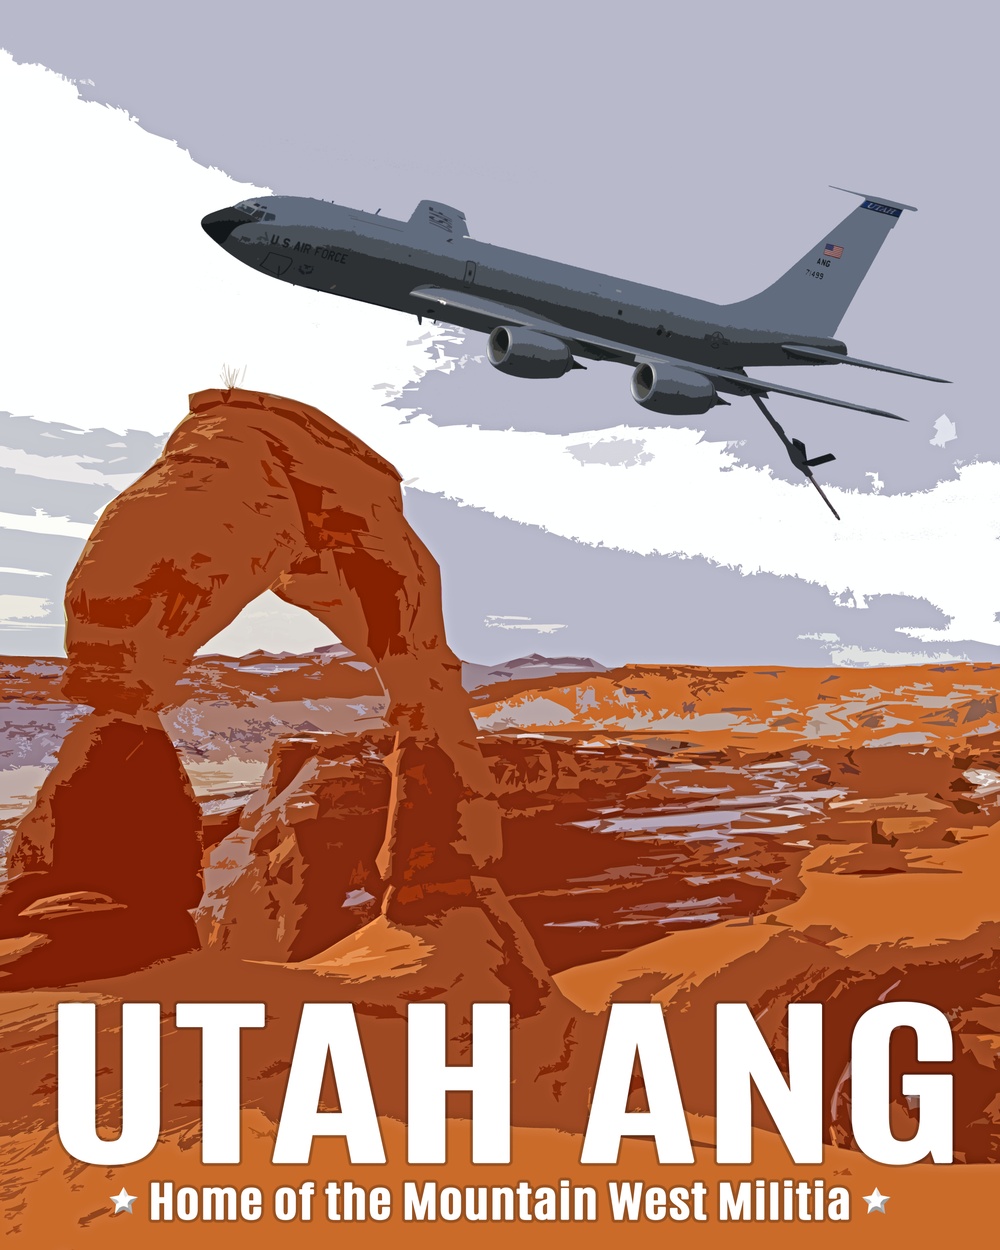 Utah Air National Guard Morale poster